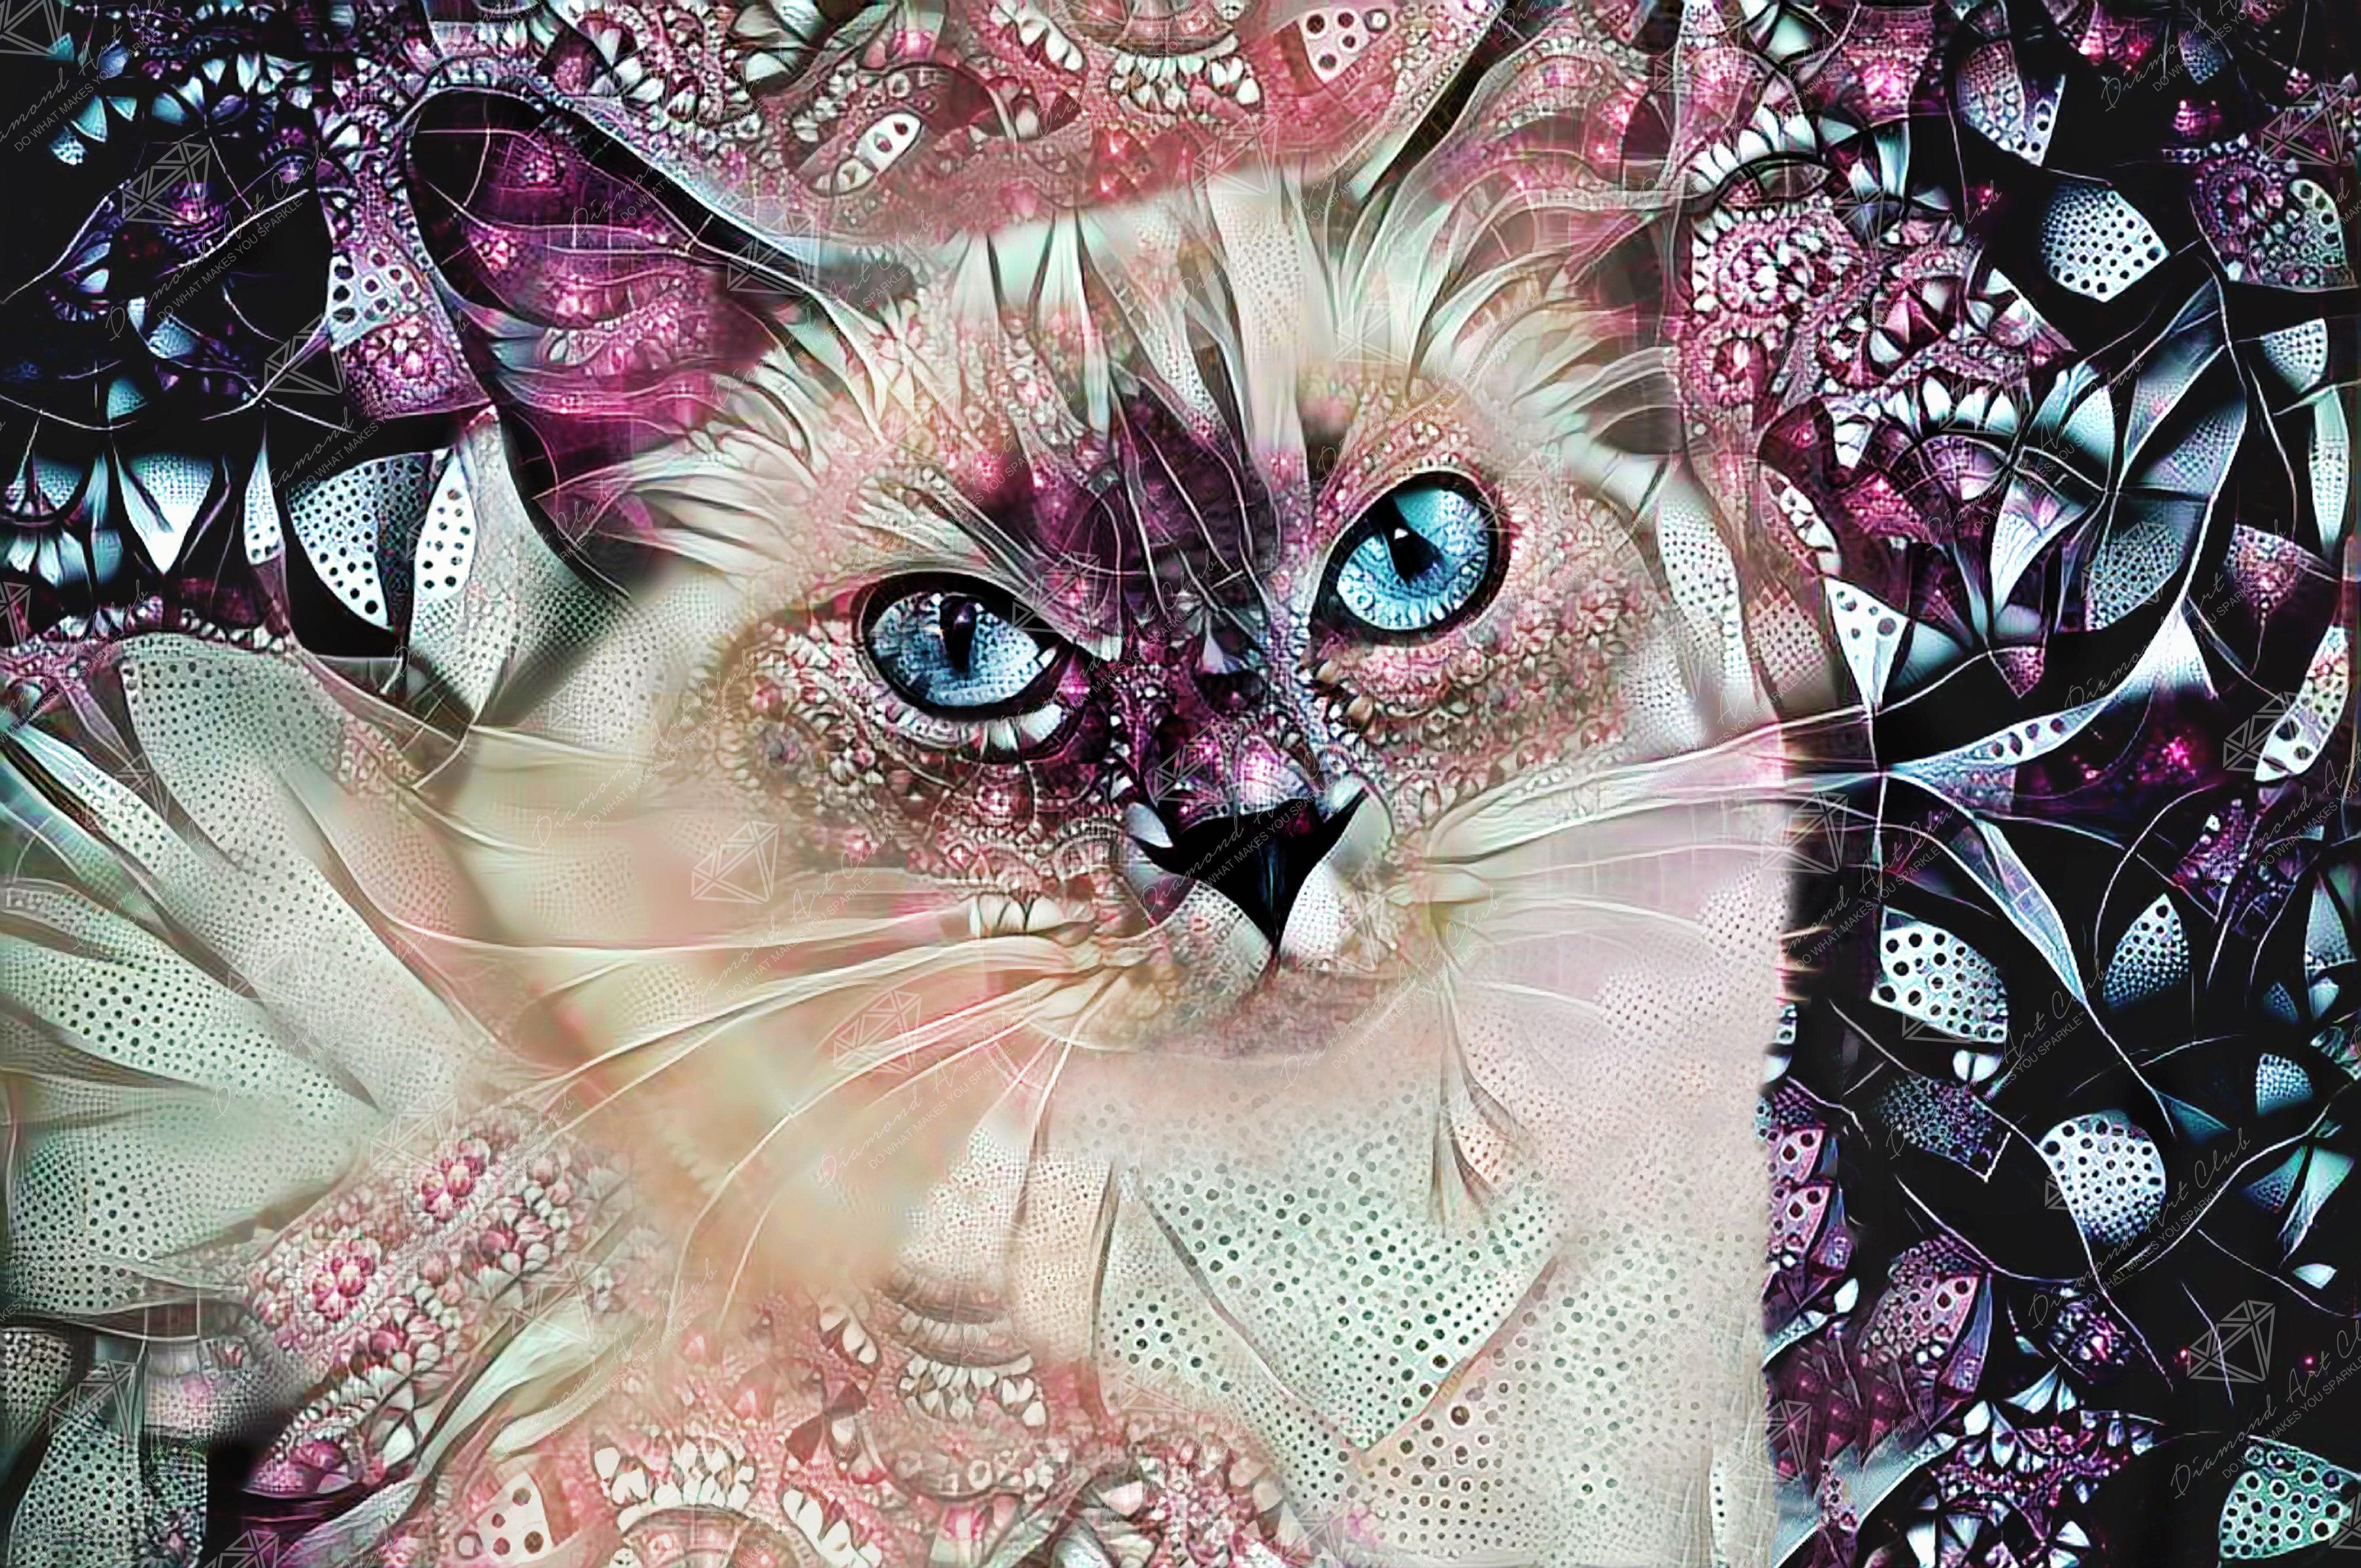 Cat in Meadow - Diamond Art World